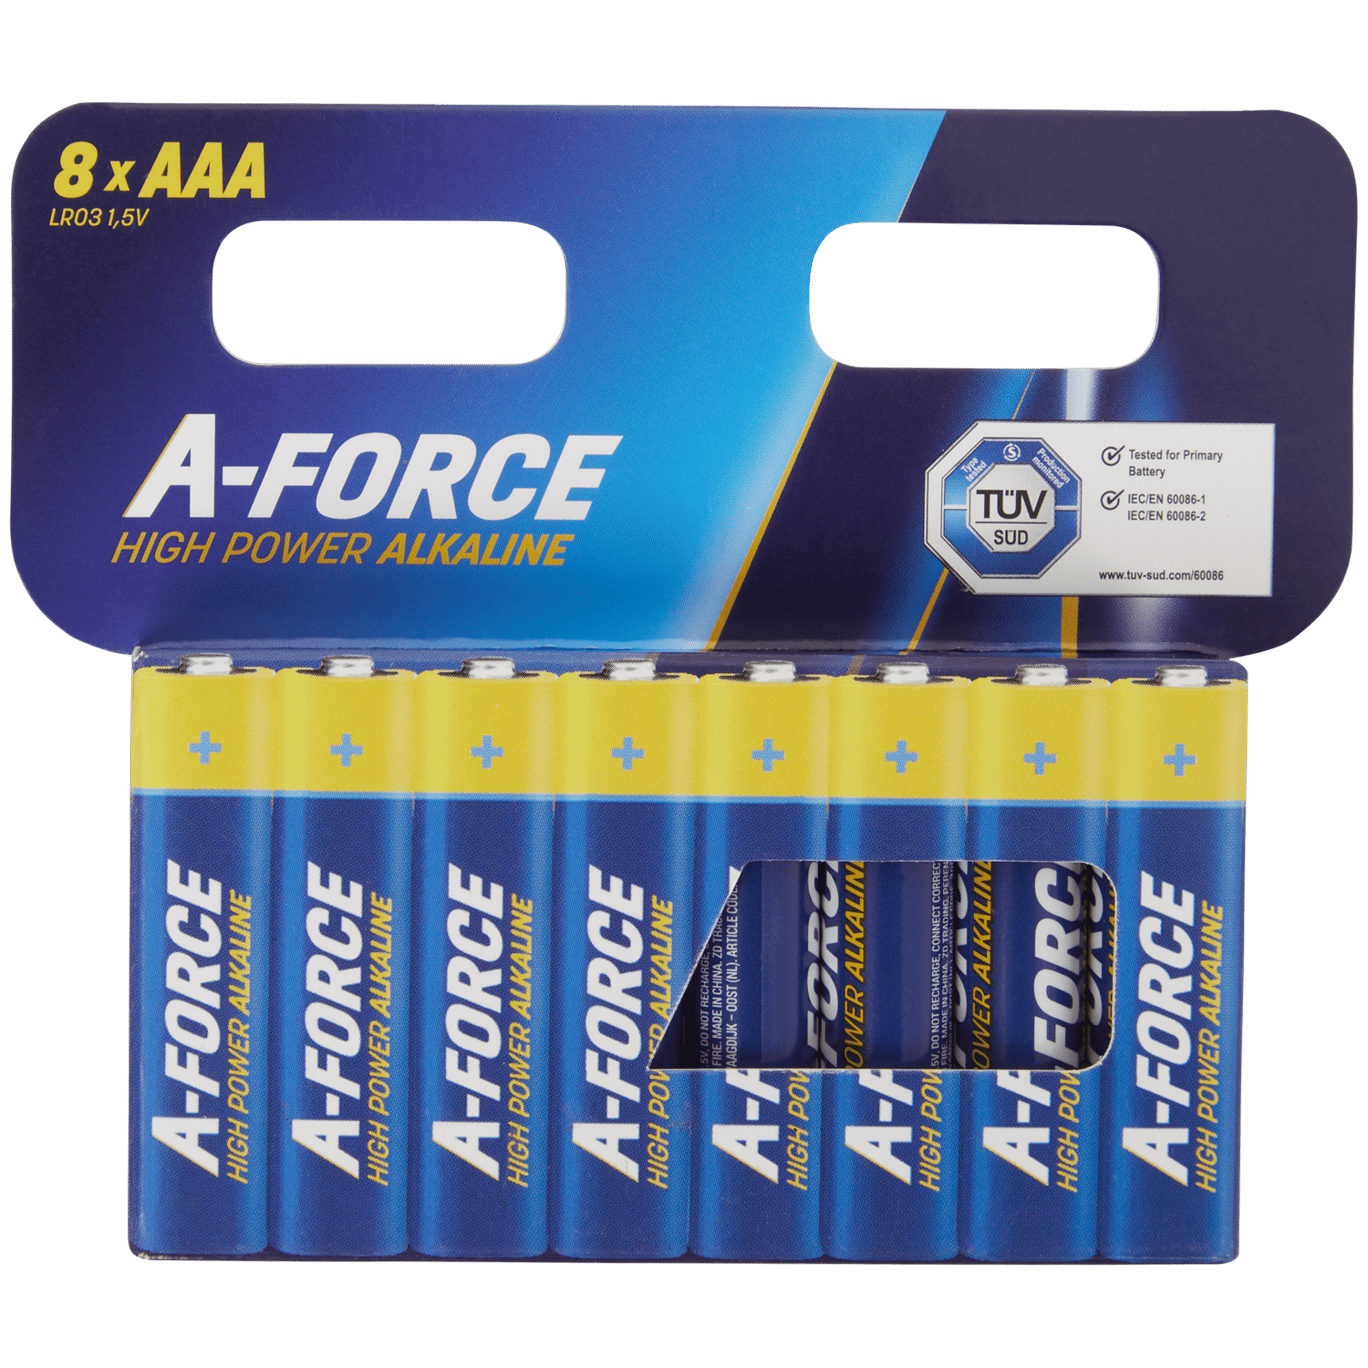 Het beste Arthur Conan Doyle verteren A-Force AAA batterijen | Action.com